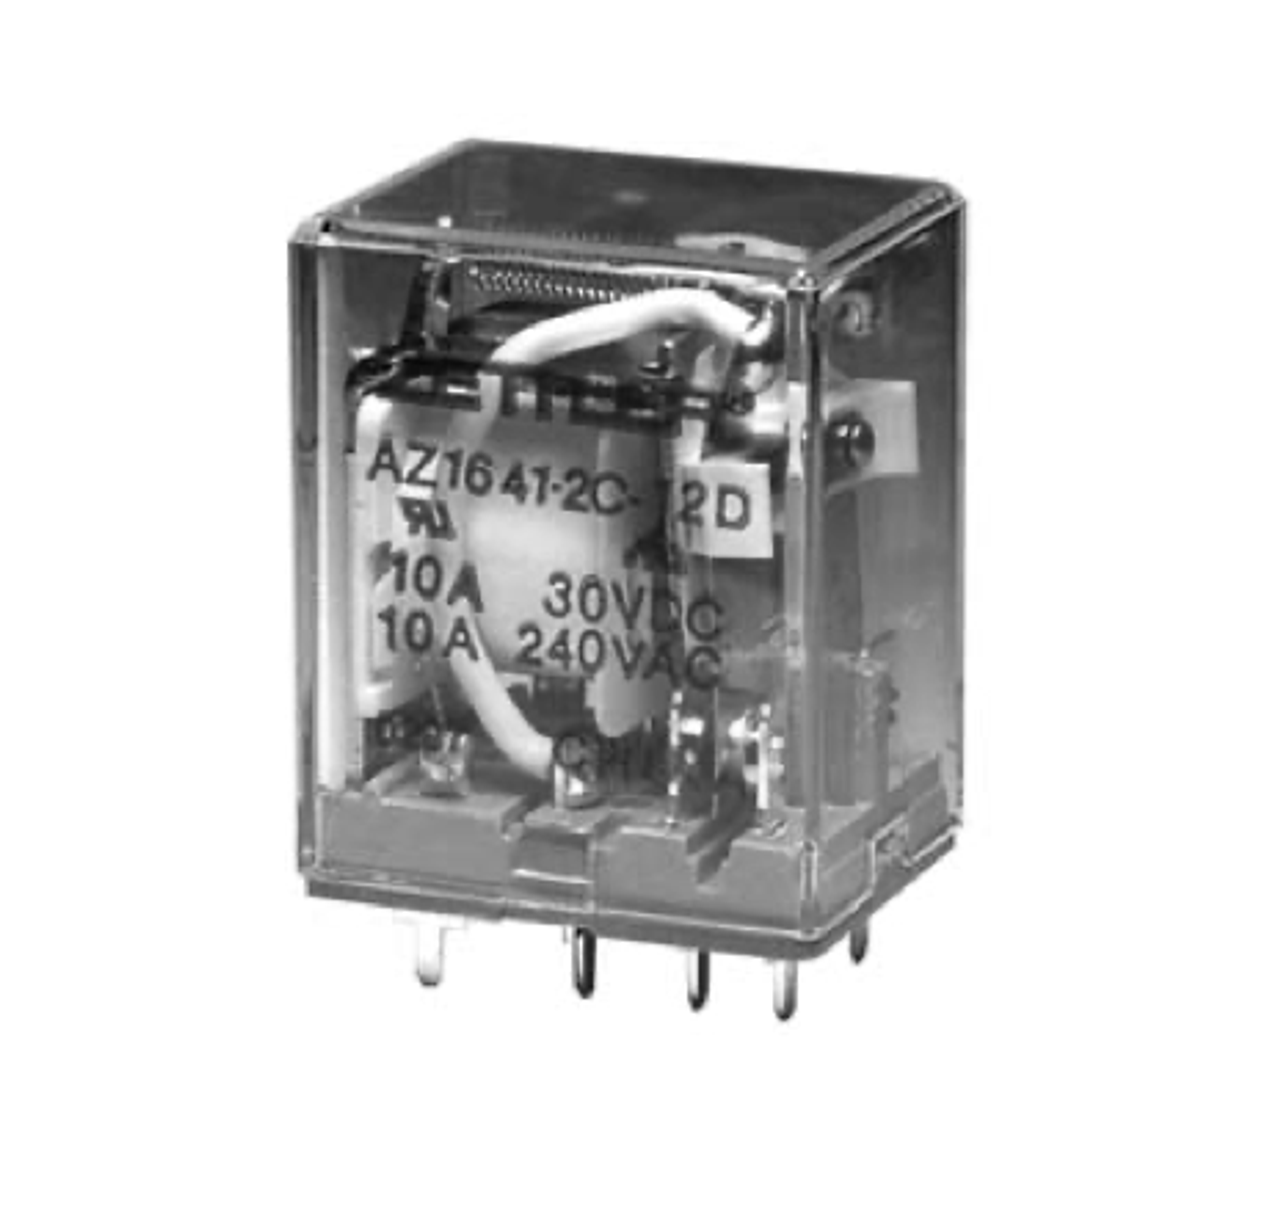 American Zettler AZ1641-1CT-12A Power Relay